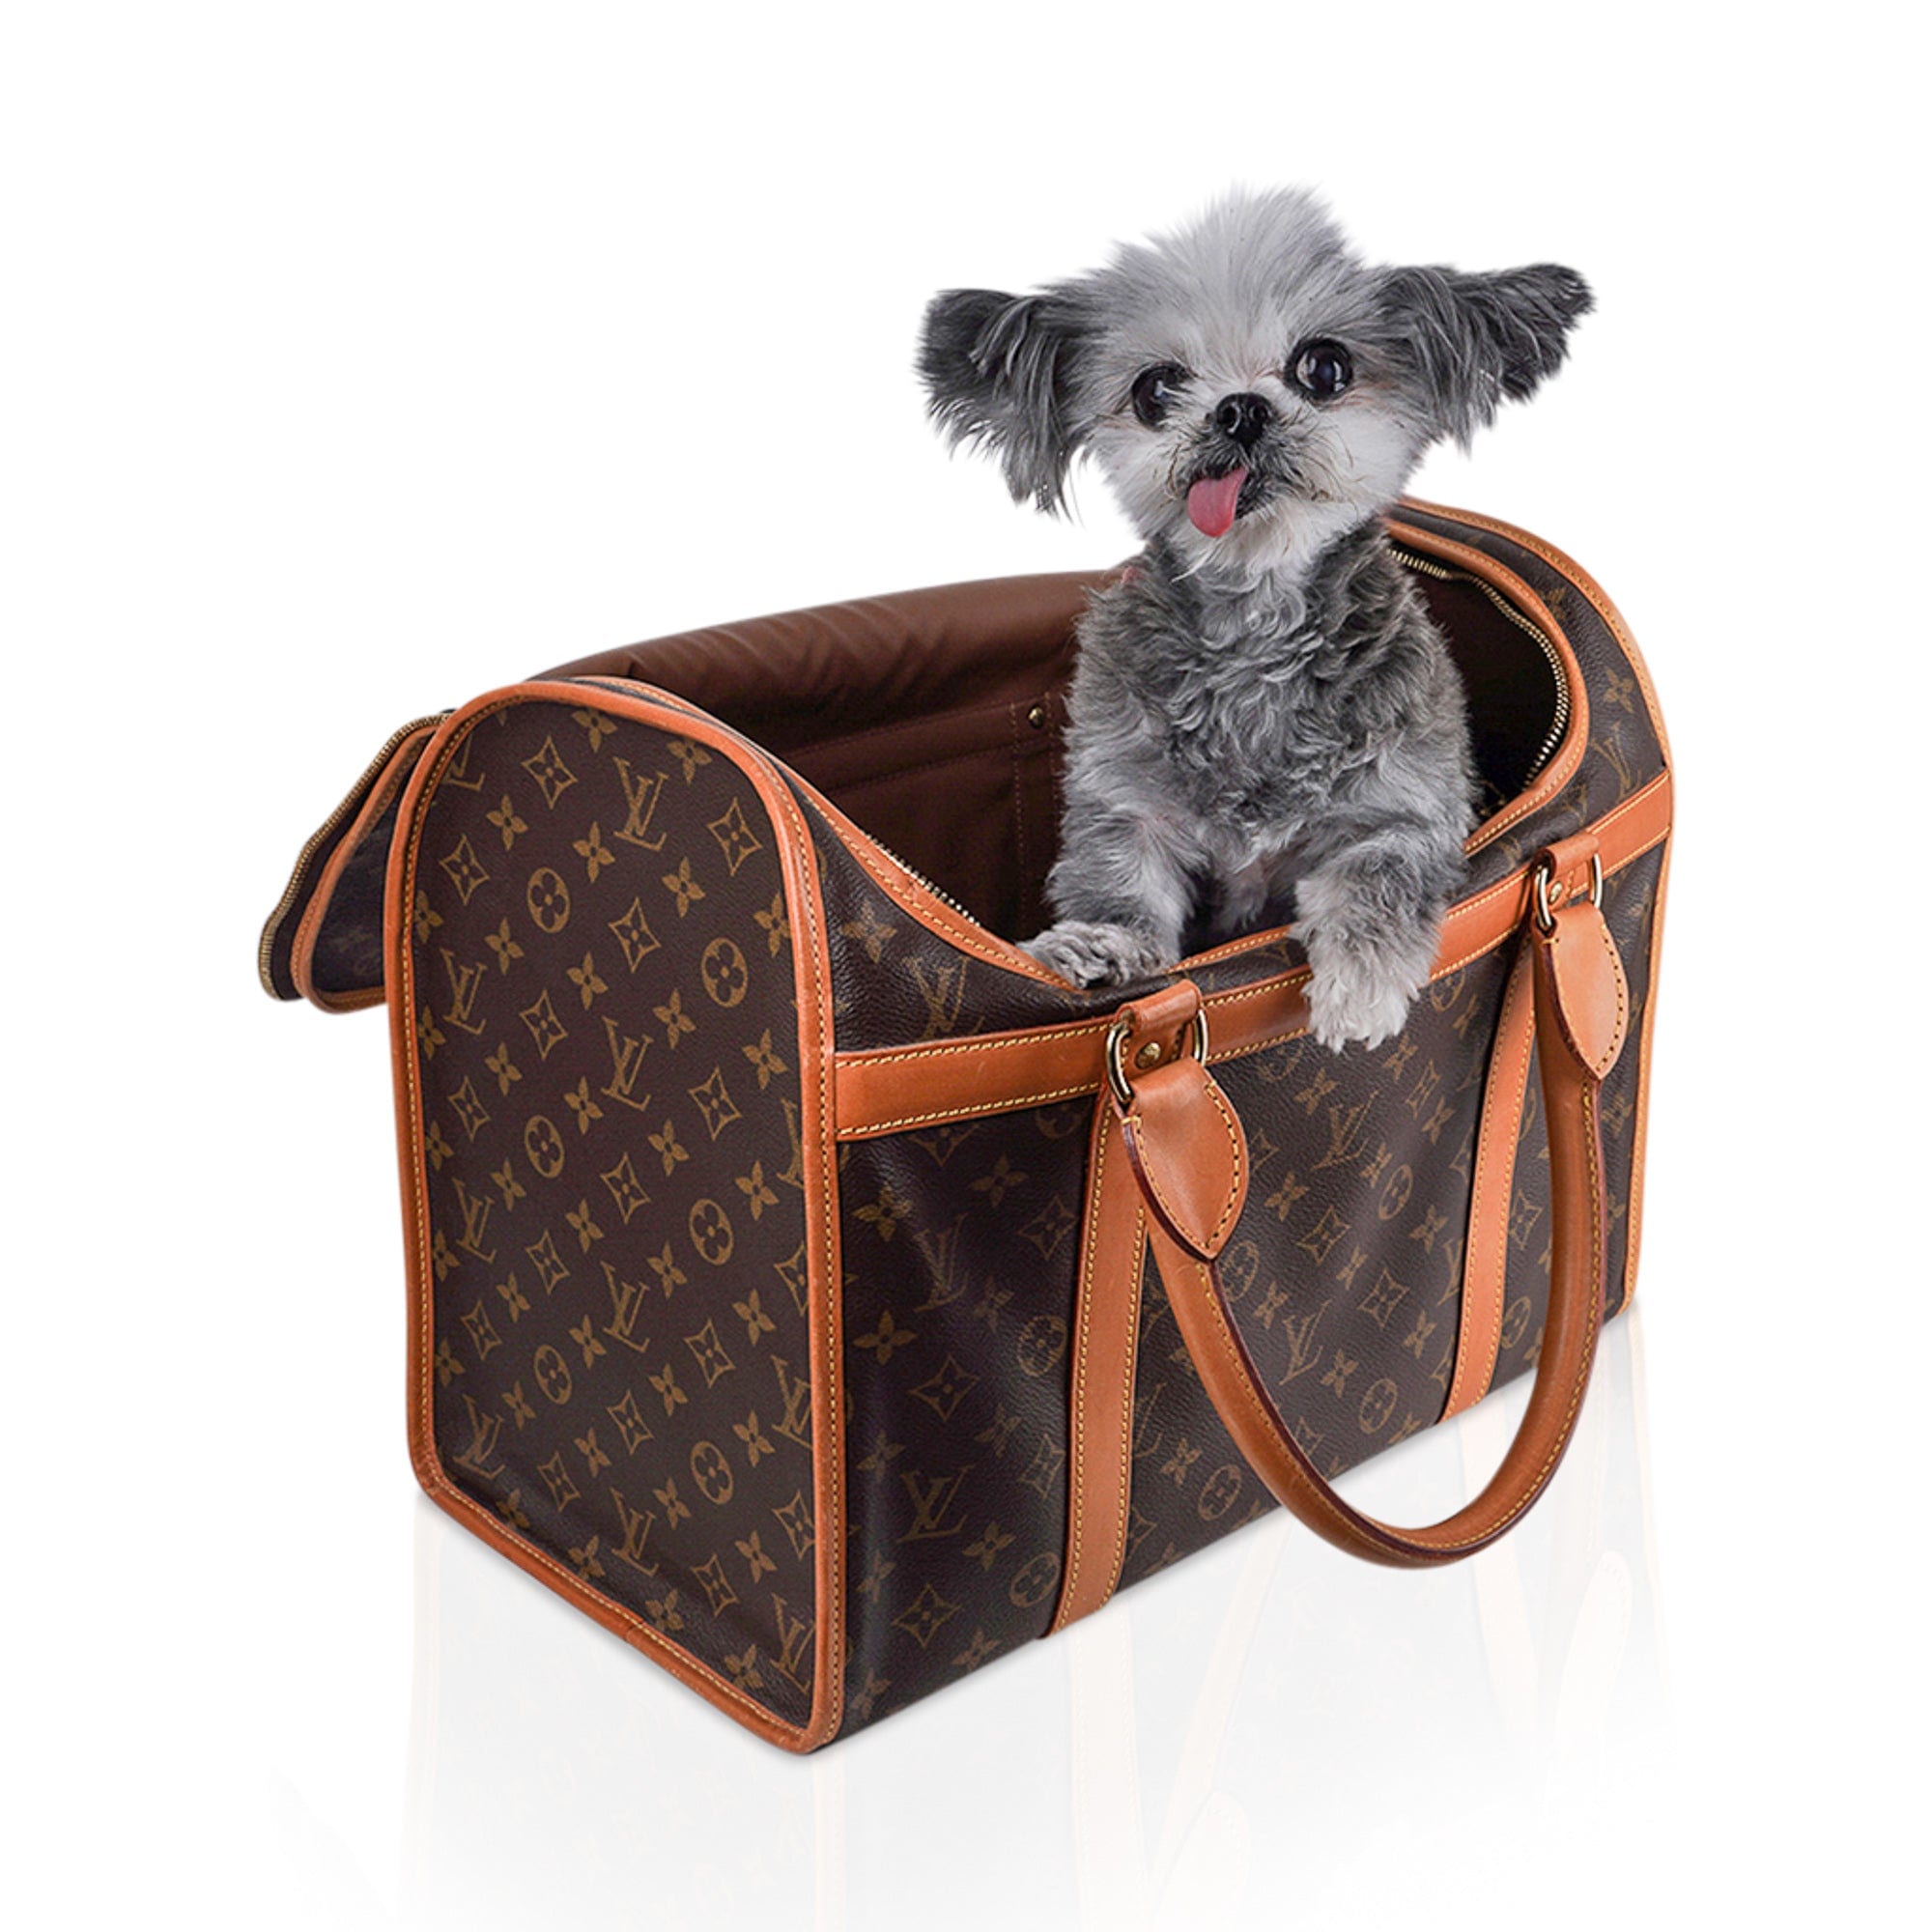 Stylish Louis Vuitton Pet Carrier - The Rich Times